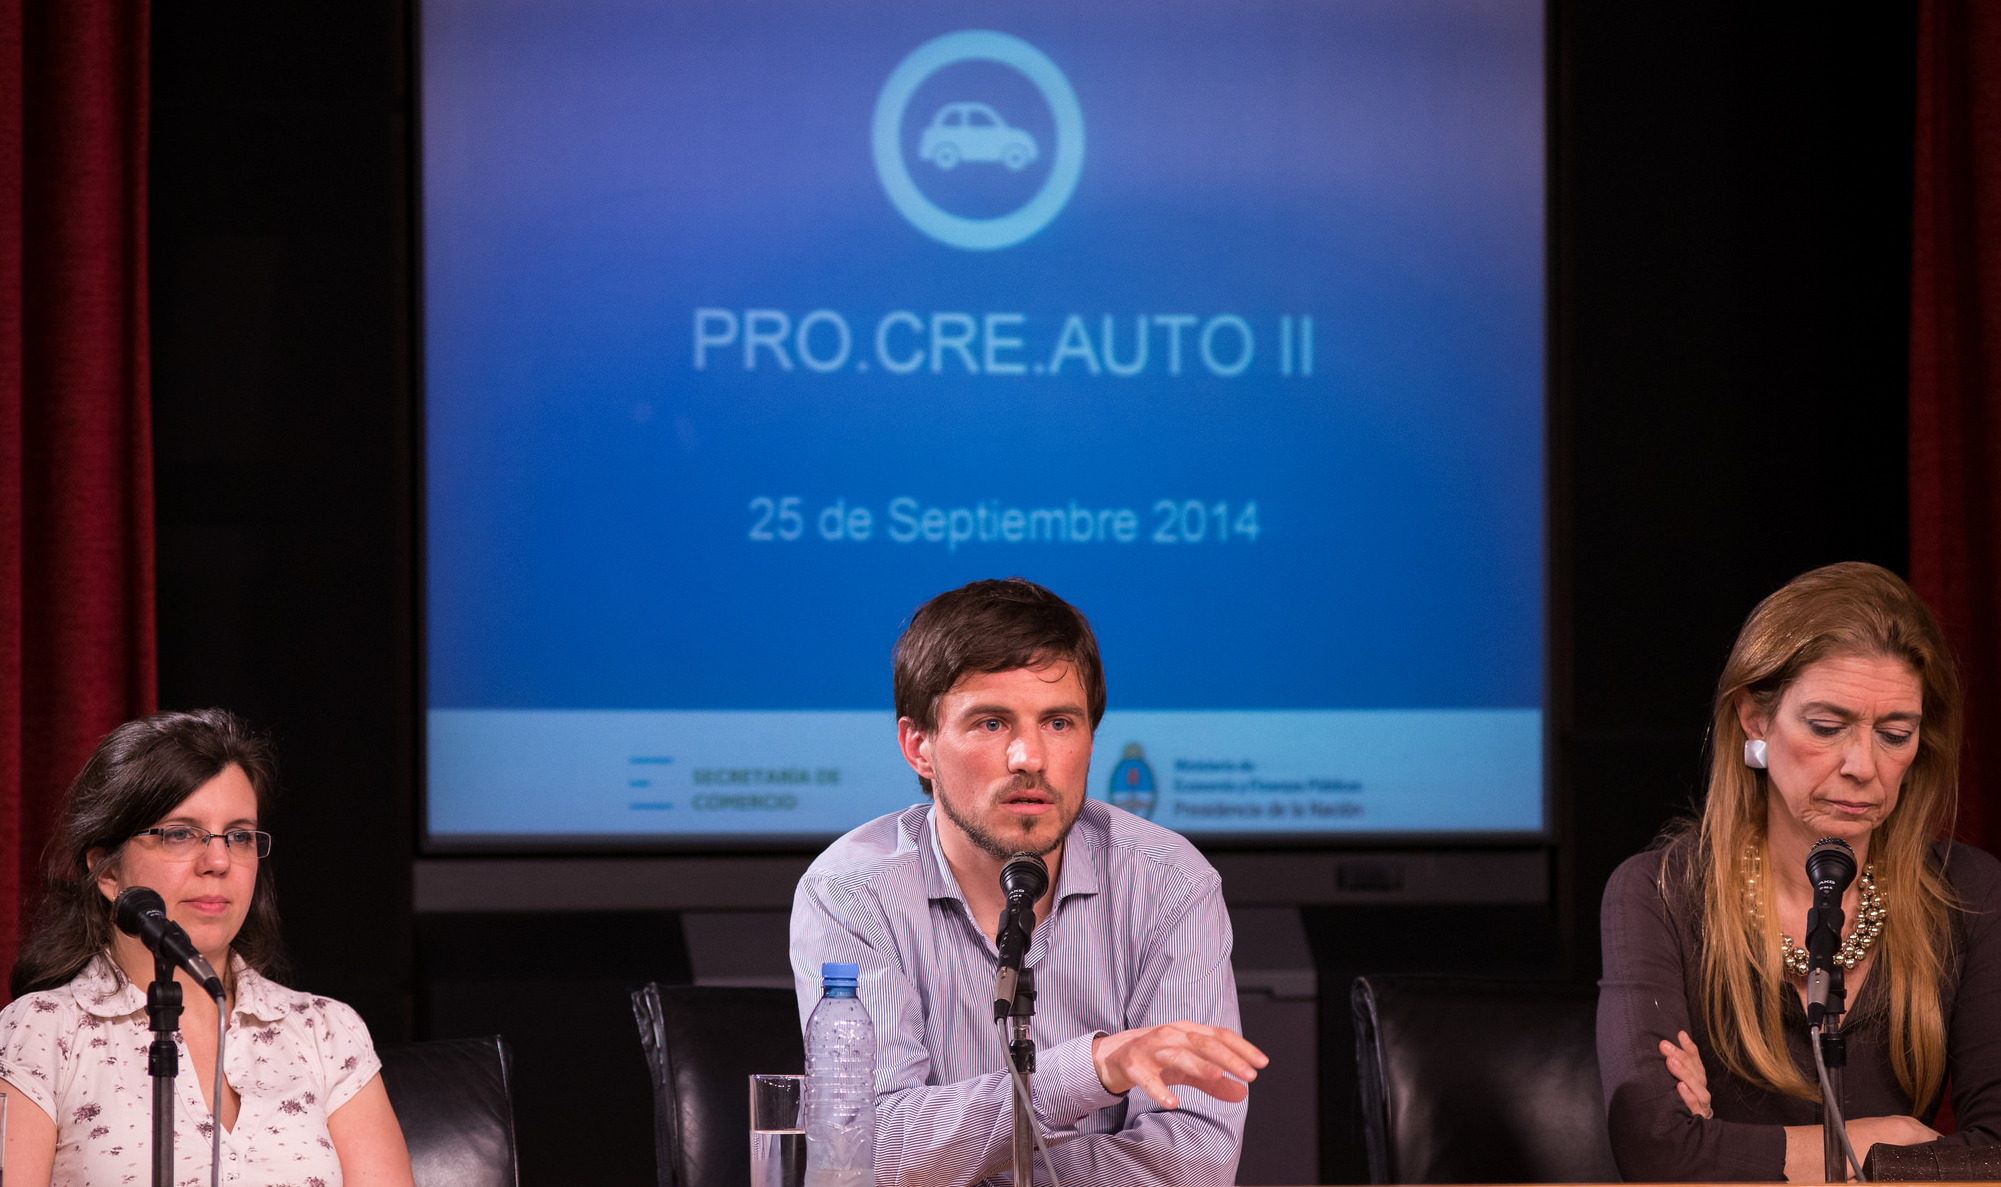 El Gobierno Nacional lanzó la segunda etapa del programa Pro.Cre.Auto.